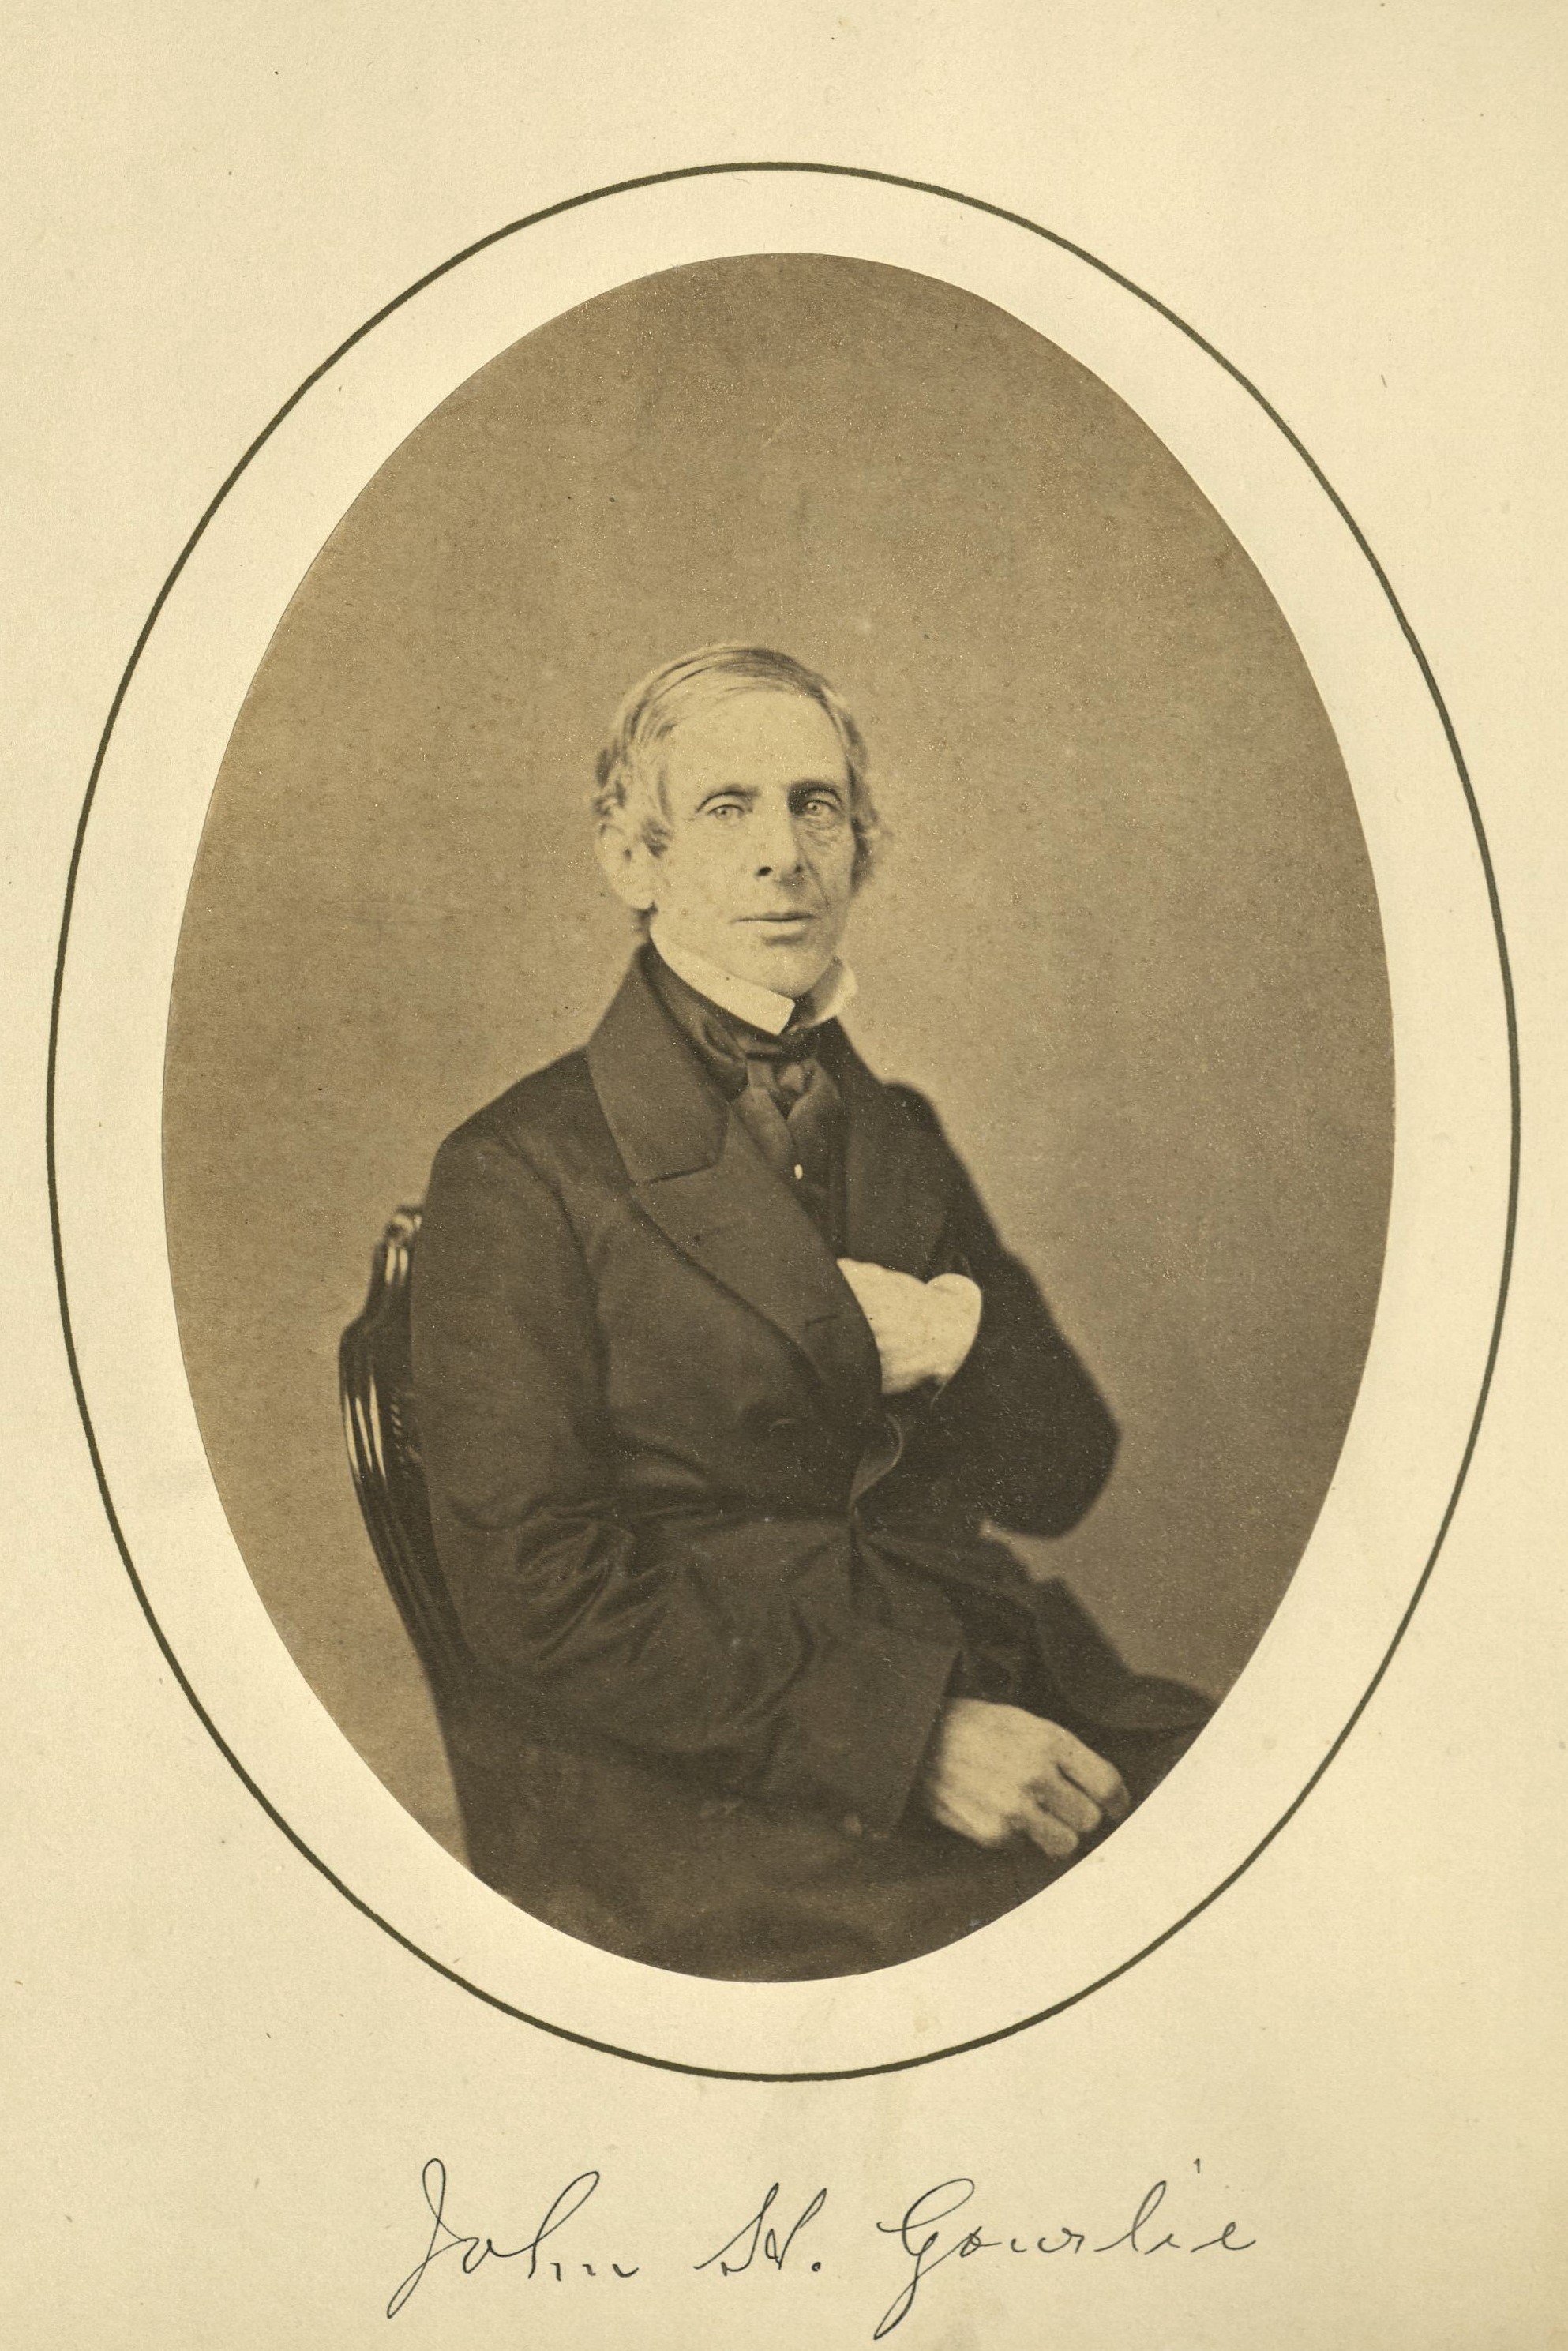 Member portrait of John H. Gourlie